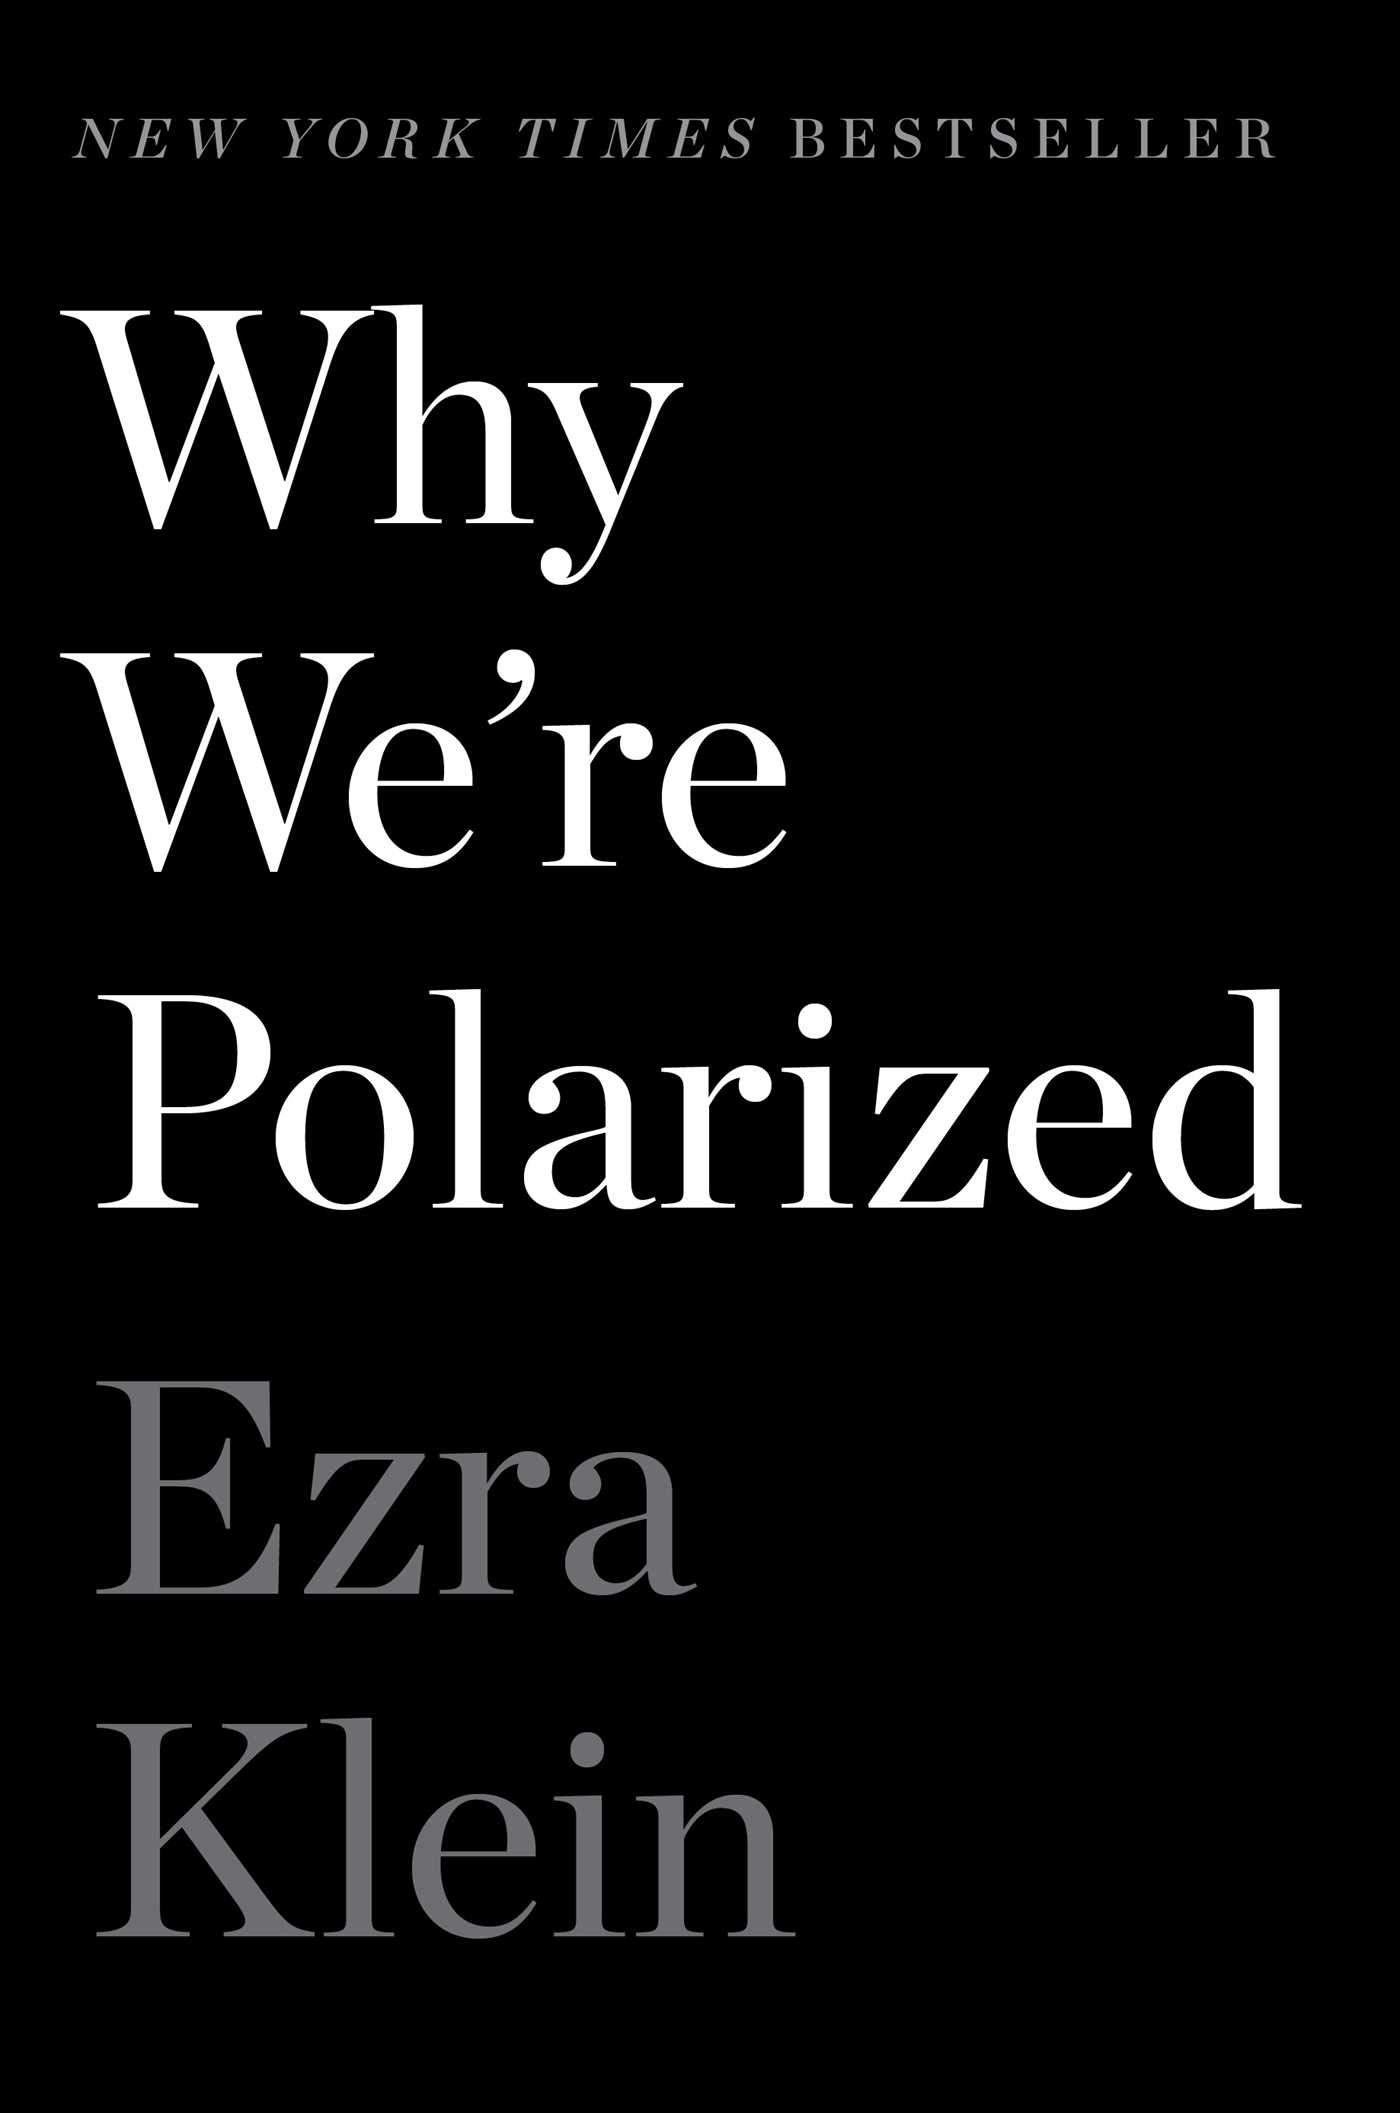 Ezra Klein: Why We're Polarized (2020, Avid Reader Press / Simon Schuster)